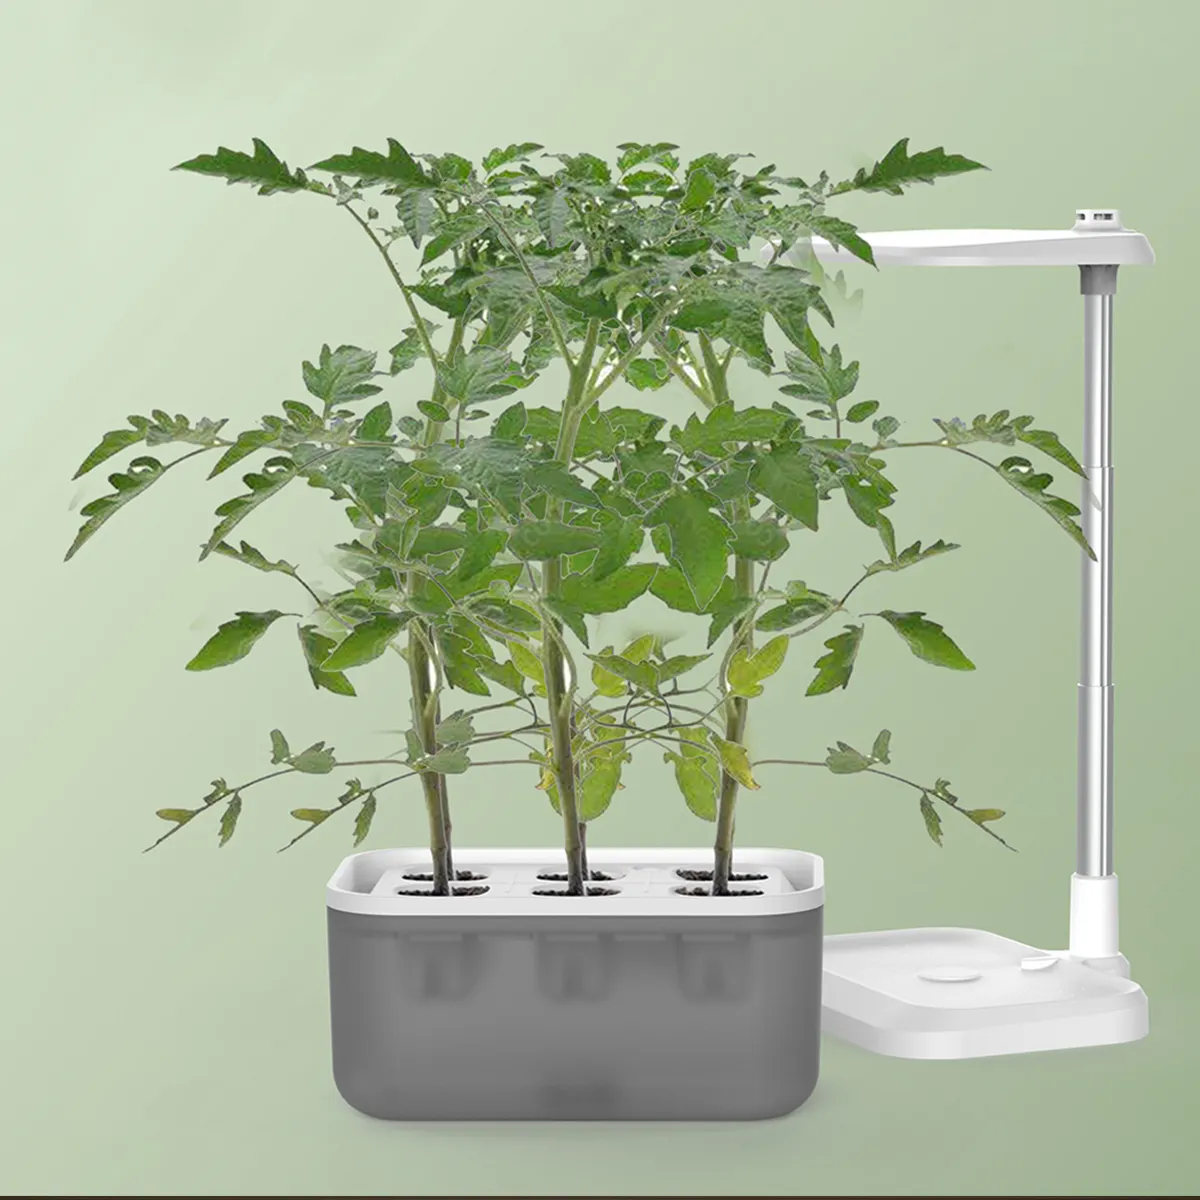 Kit de hidroponia inteligente para jardim, mini vaso e plantador com luz LED para crescimento doméstico, mesa interna inteligente verde